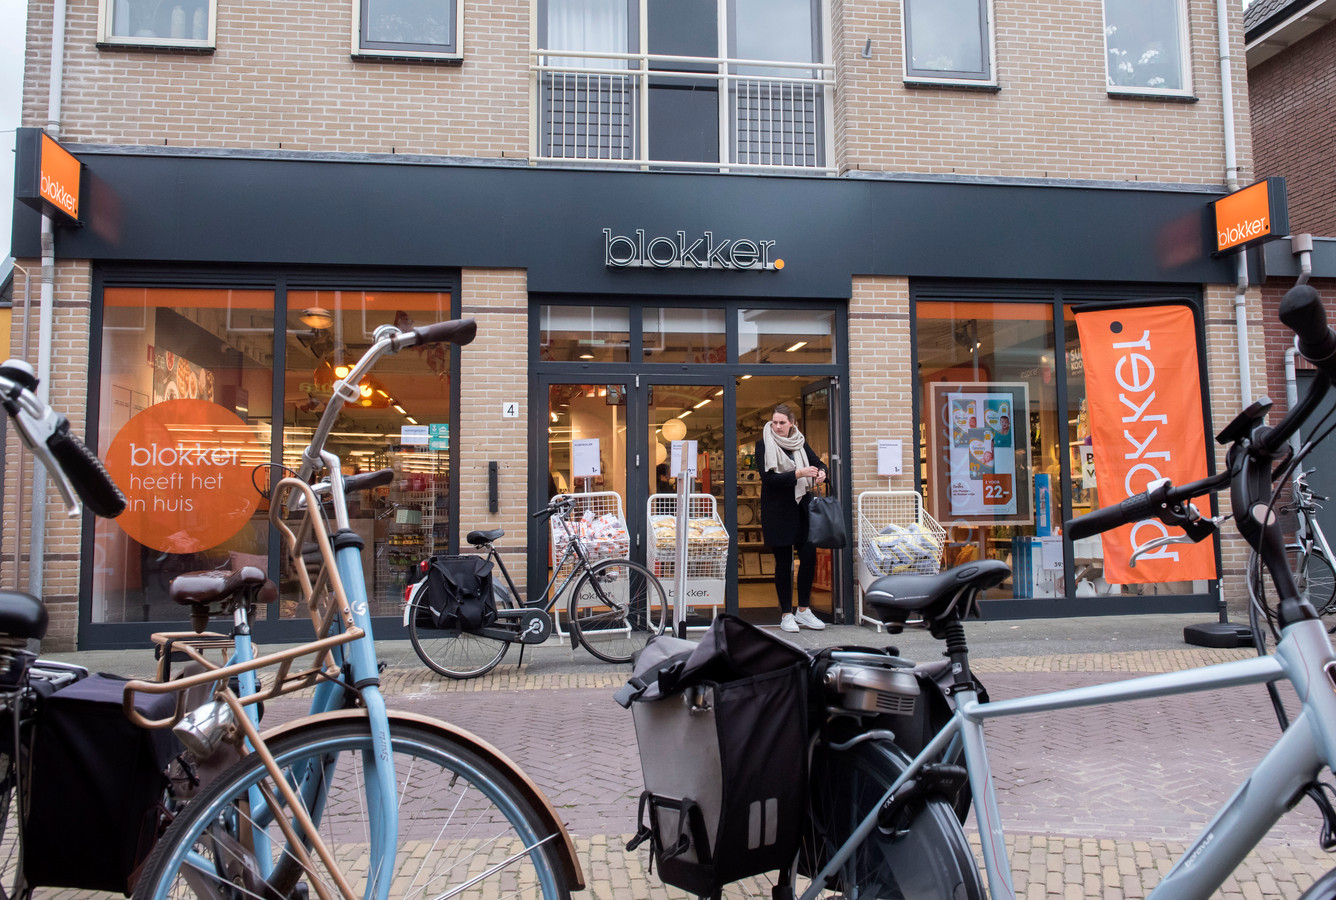 DS-2019-3031 28-03-2019 Blokker opent in Putten voor het eerst een winkel. In het pand waar vroeger Xenos zat. Straat, pand, winkelend publiek.Opdrachtnummer: DS-2019-3031© Ruben Schipper Fotografie